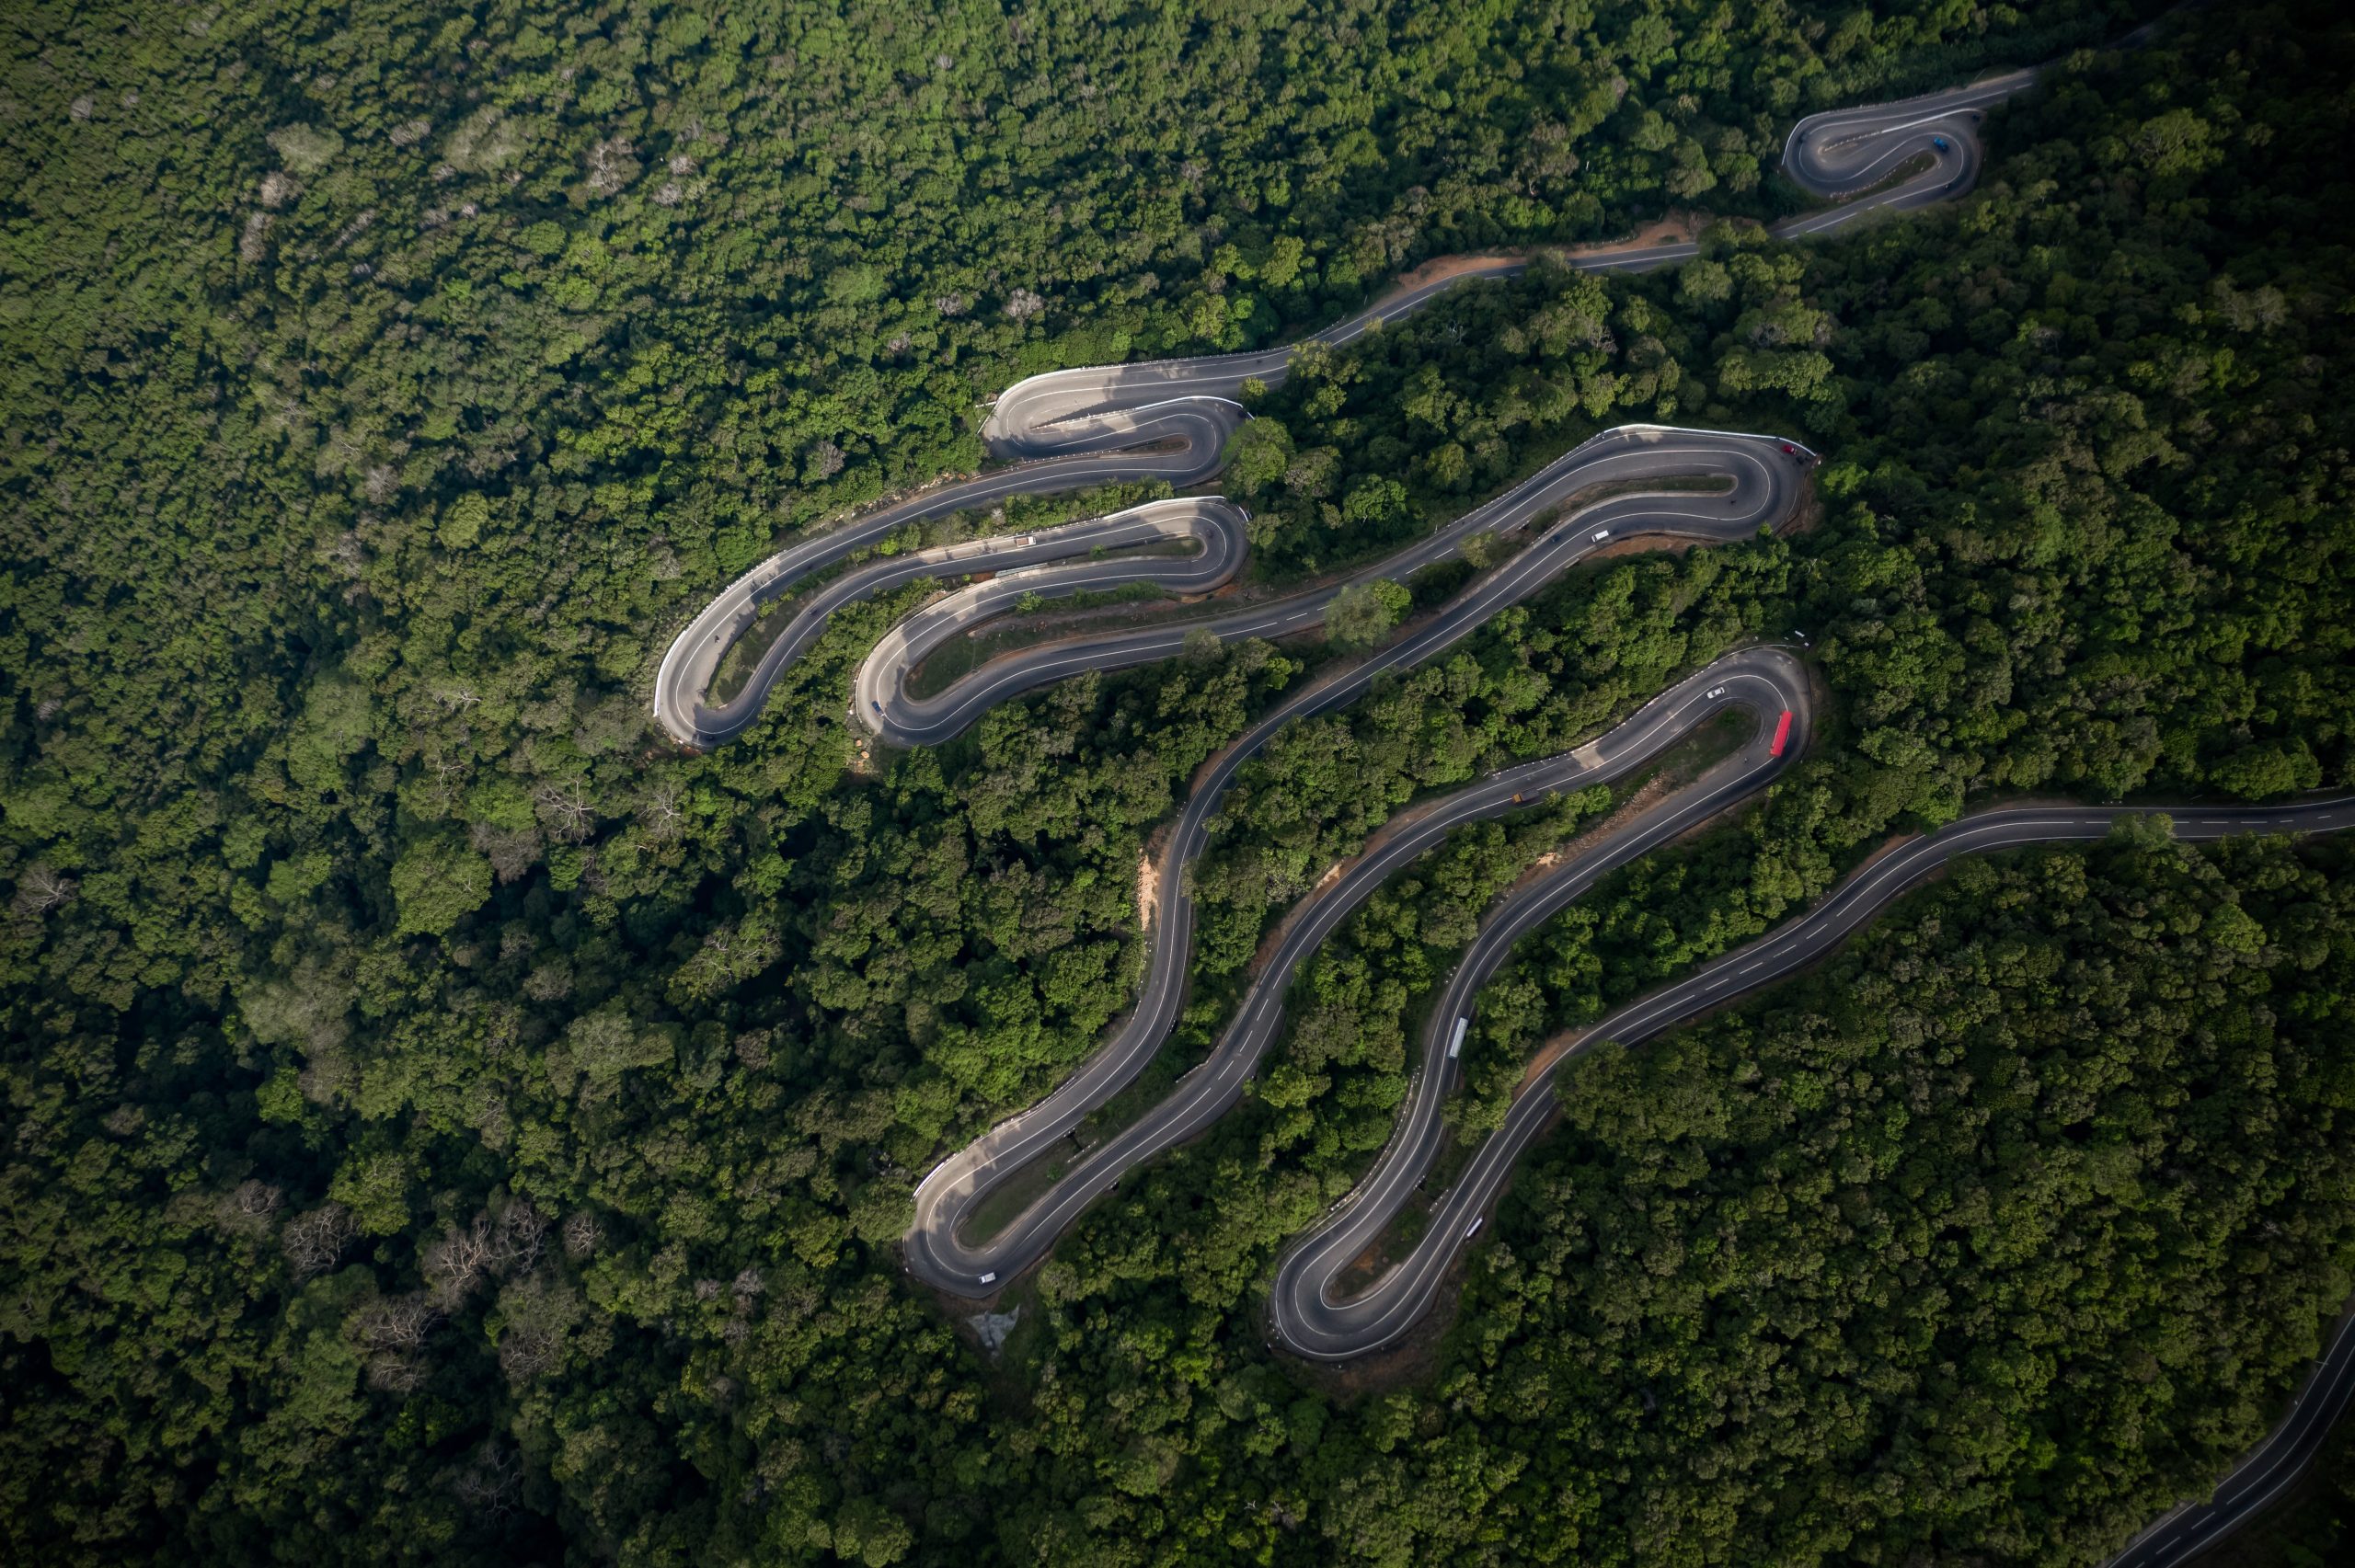 18 bends scenic road in Sri Lanka